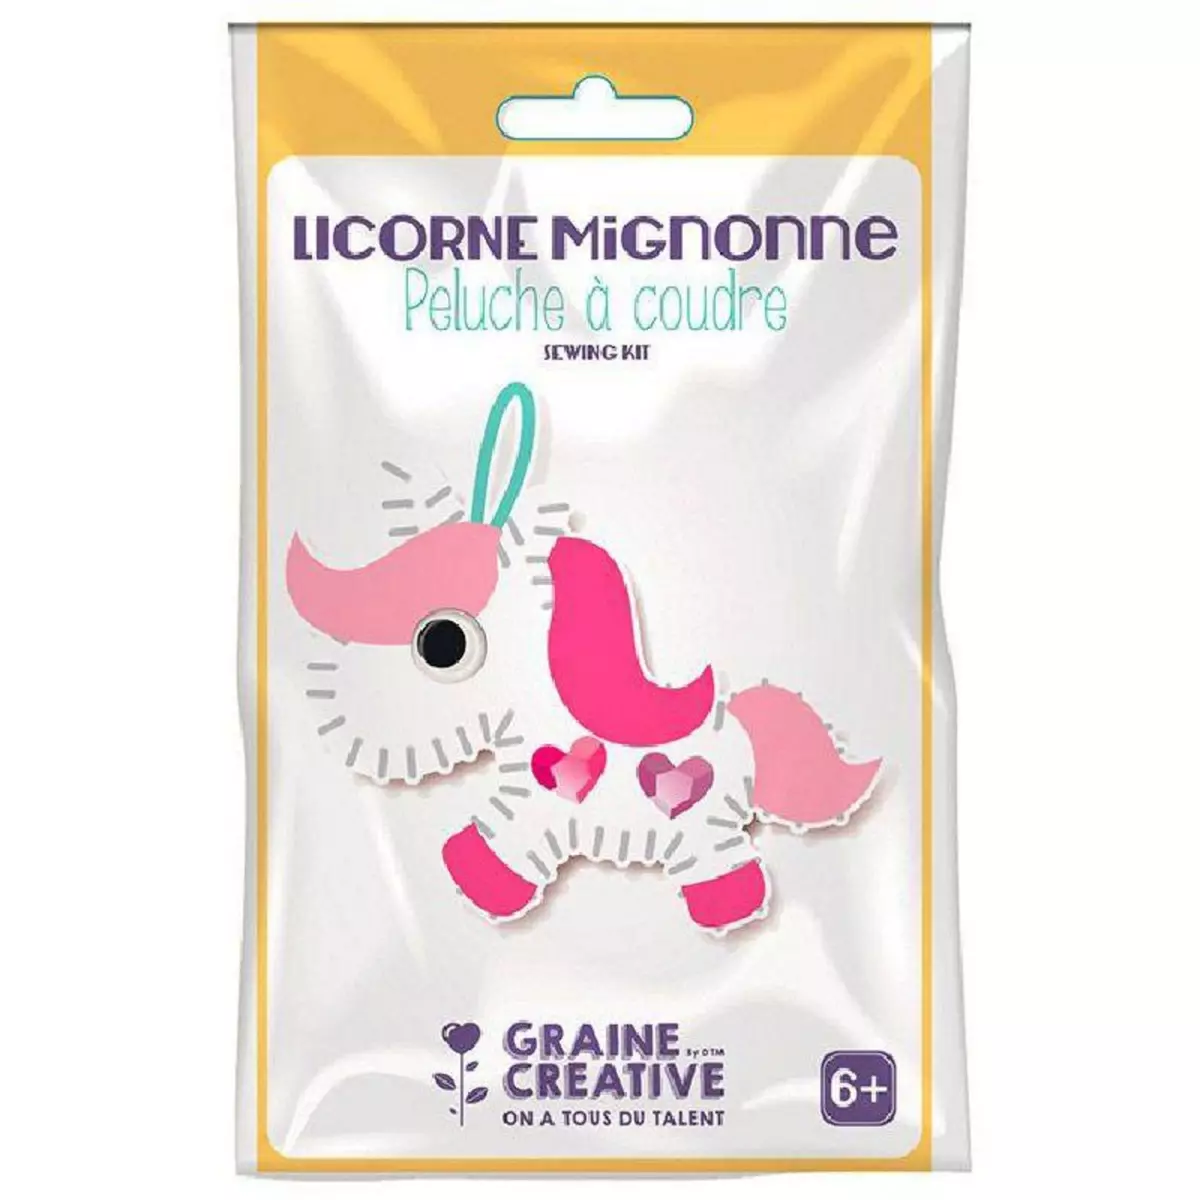 Graine créative Kit peluche à coudre - Licorne Mignonne